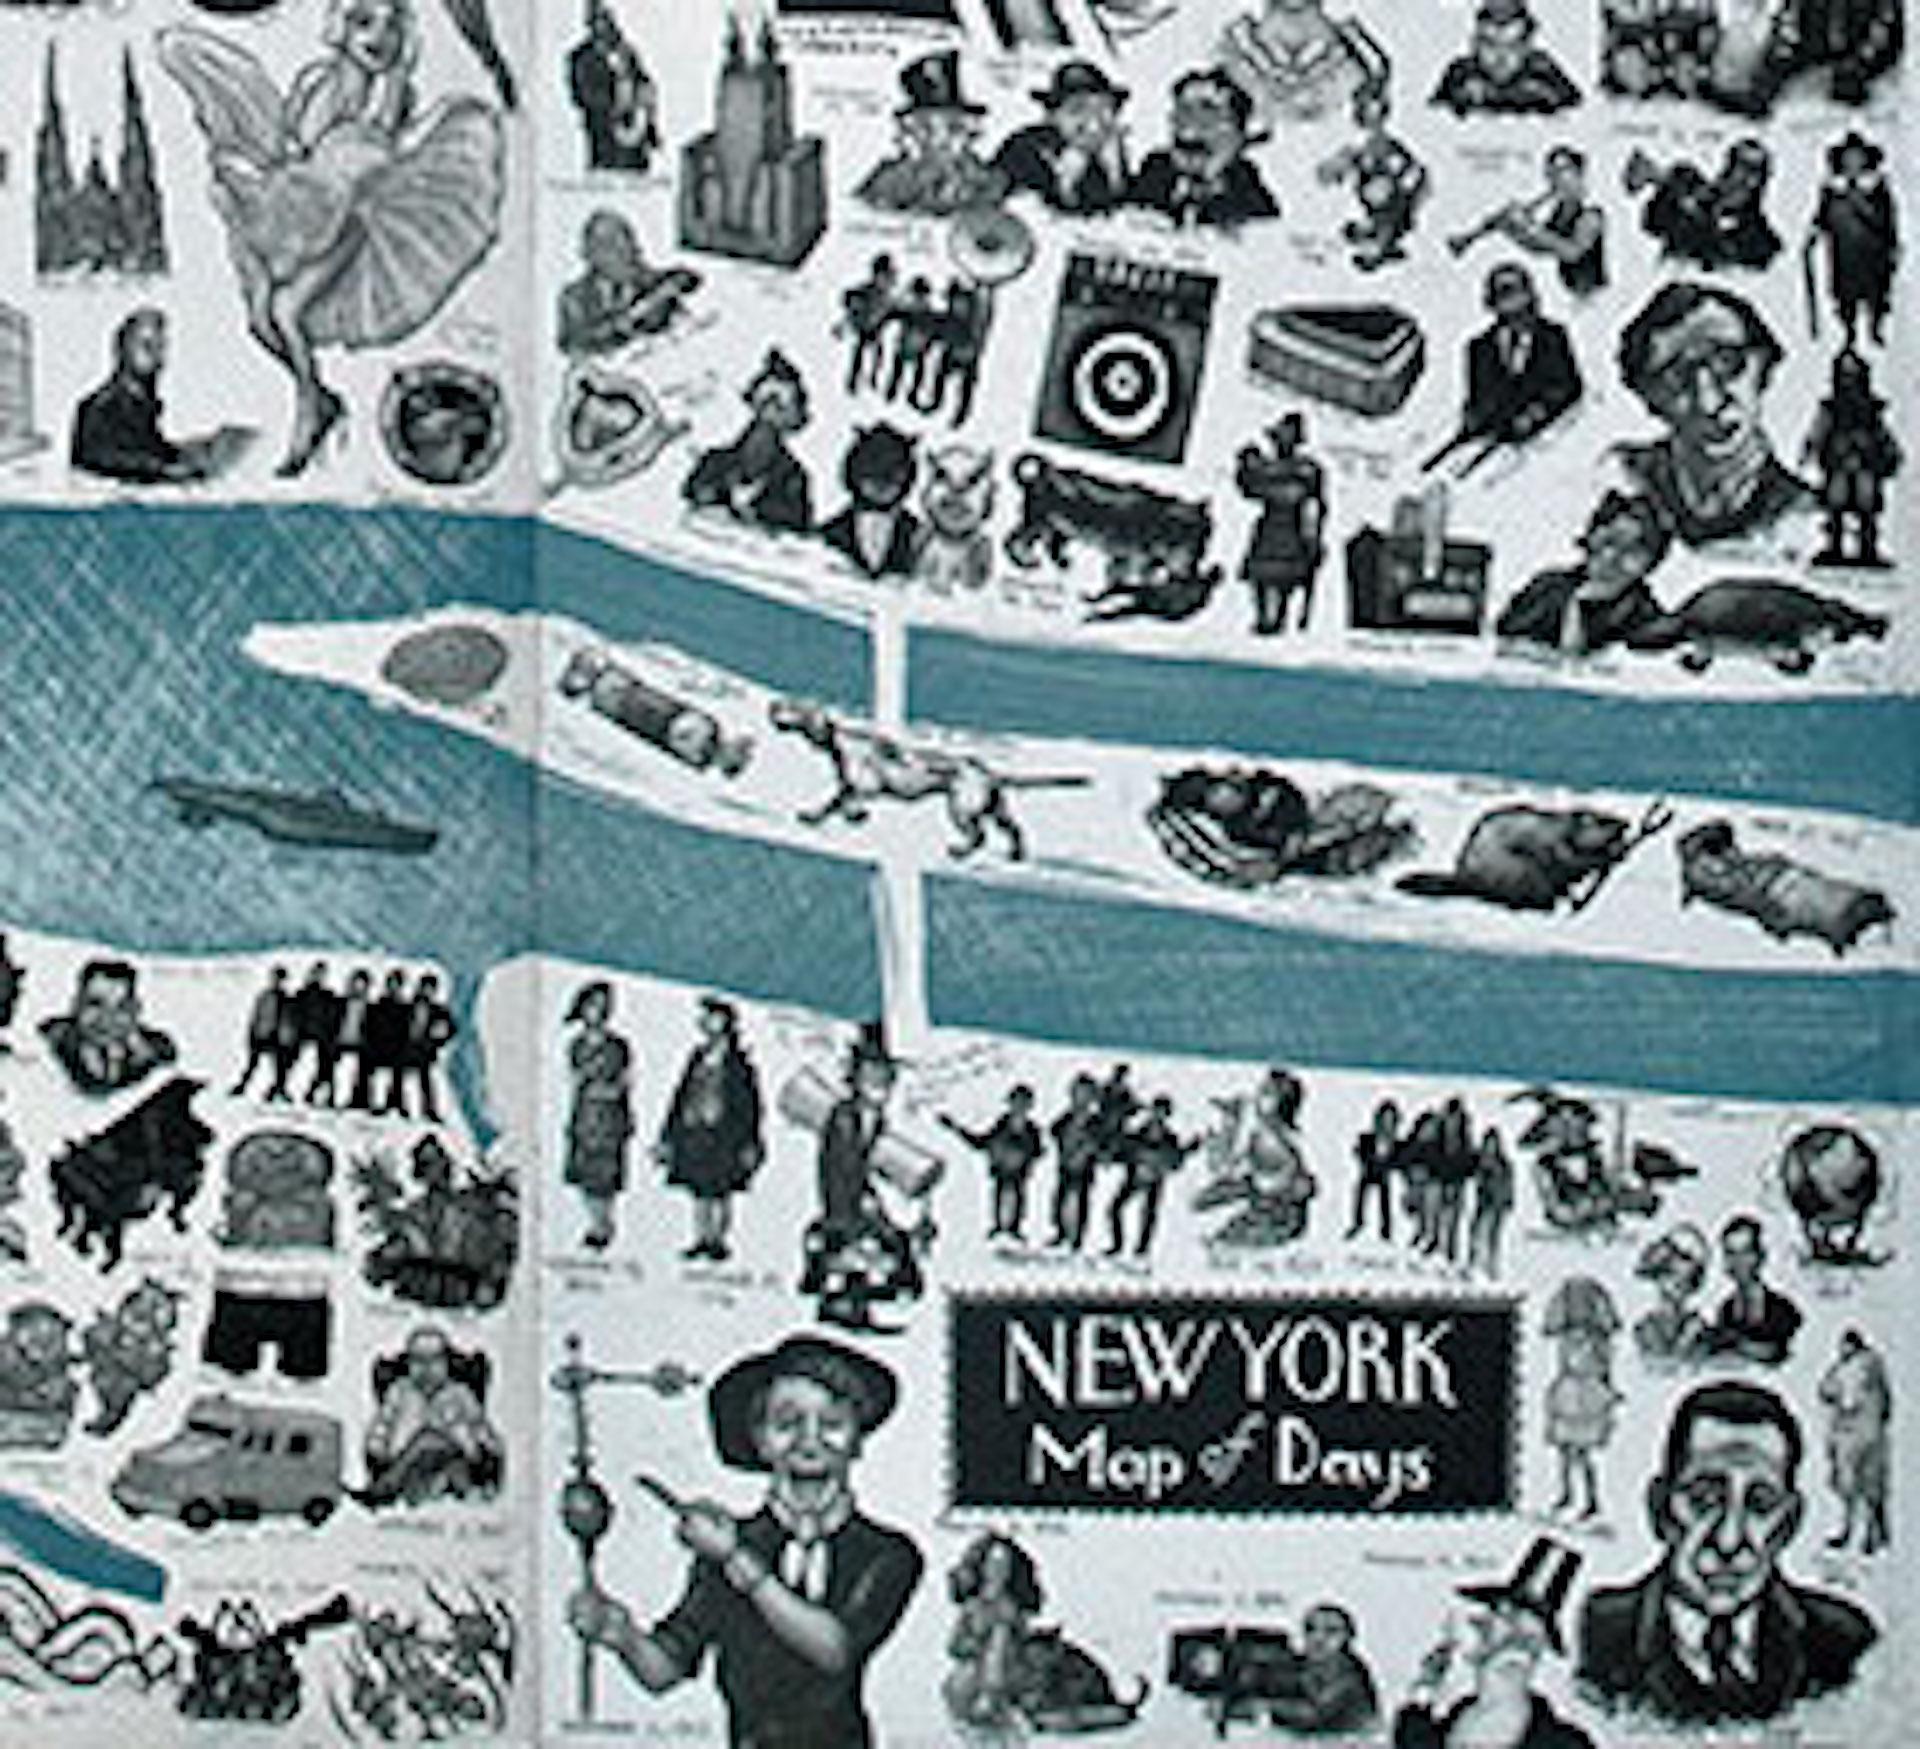 New York Map of Days ist eine limitierte Auflage einer Radierung von Mychael Barratt. Der illustrative Stil dieses Werks erweckt New York, seine Wahrzeichen und unendlichen Geschichten zum Leben.

Radierung - Eine Reliefdrucktechnik, bei der das